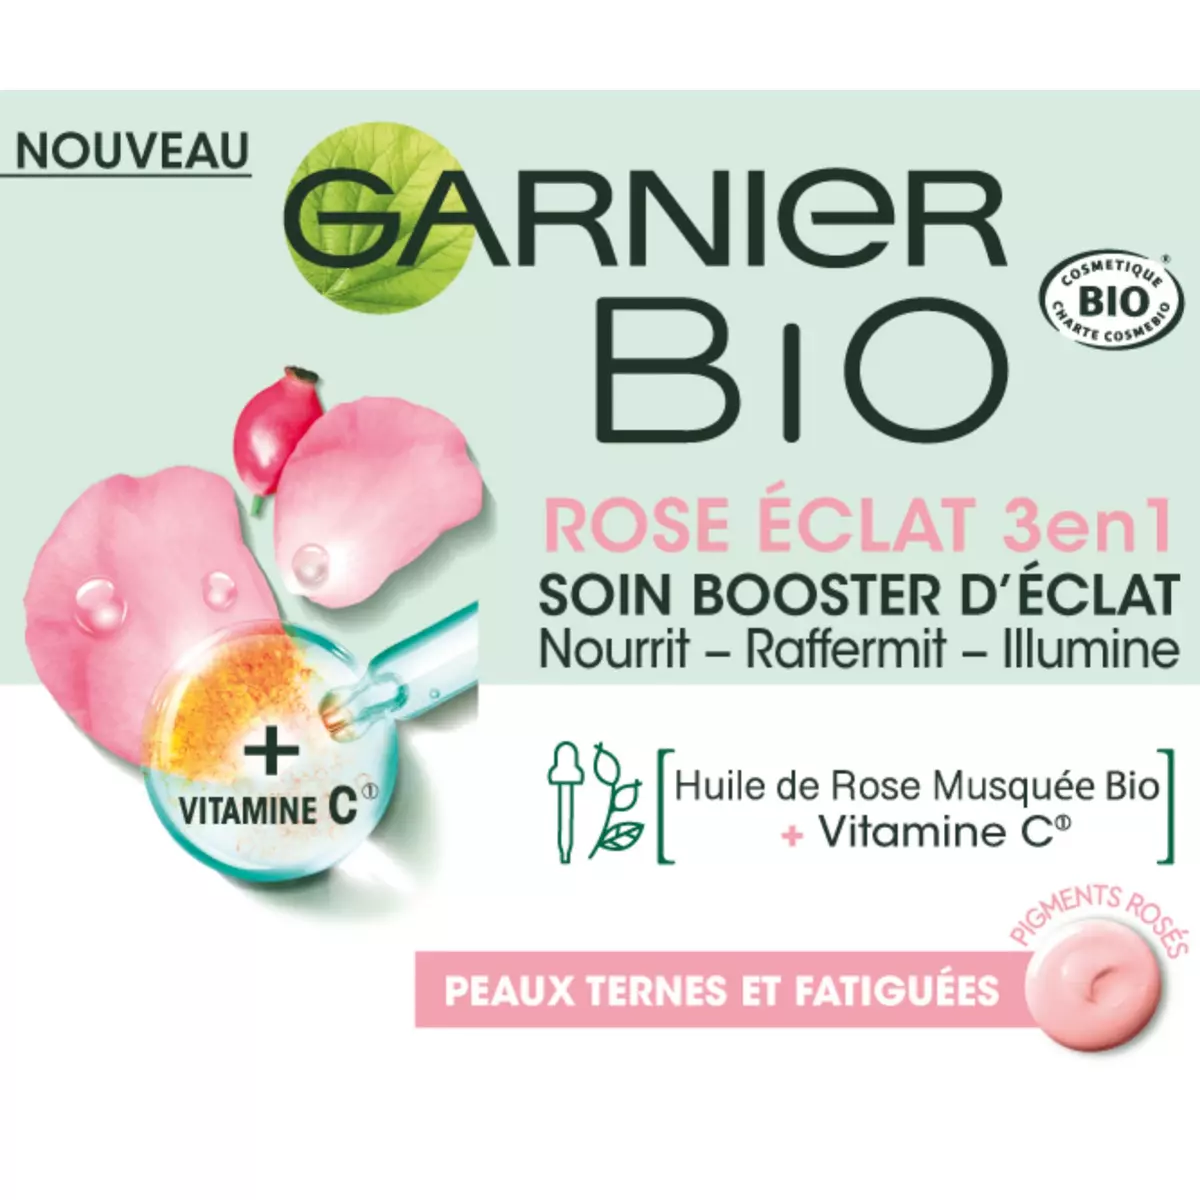 GARNIER BIO Soin booster d'éclat rose éclat 3en1 peaux ternes et fatiguées 40ml